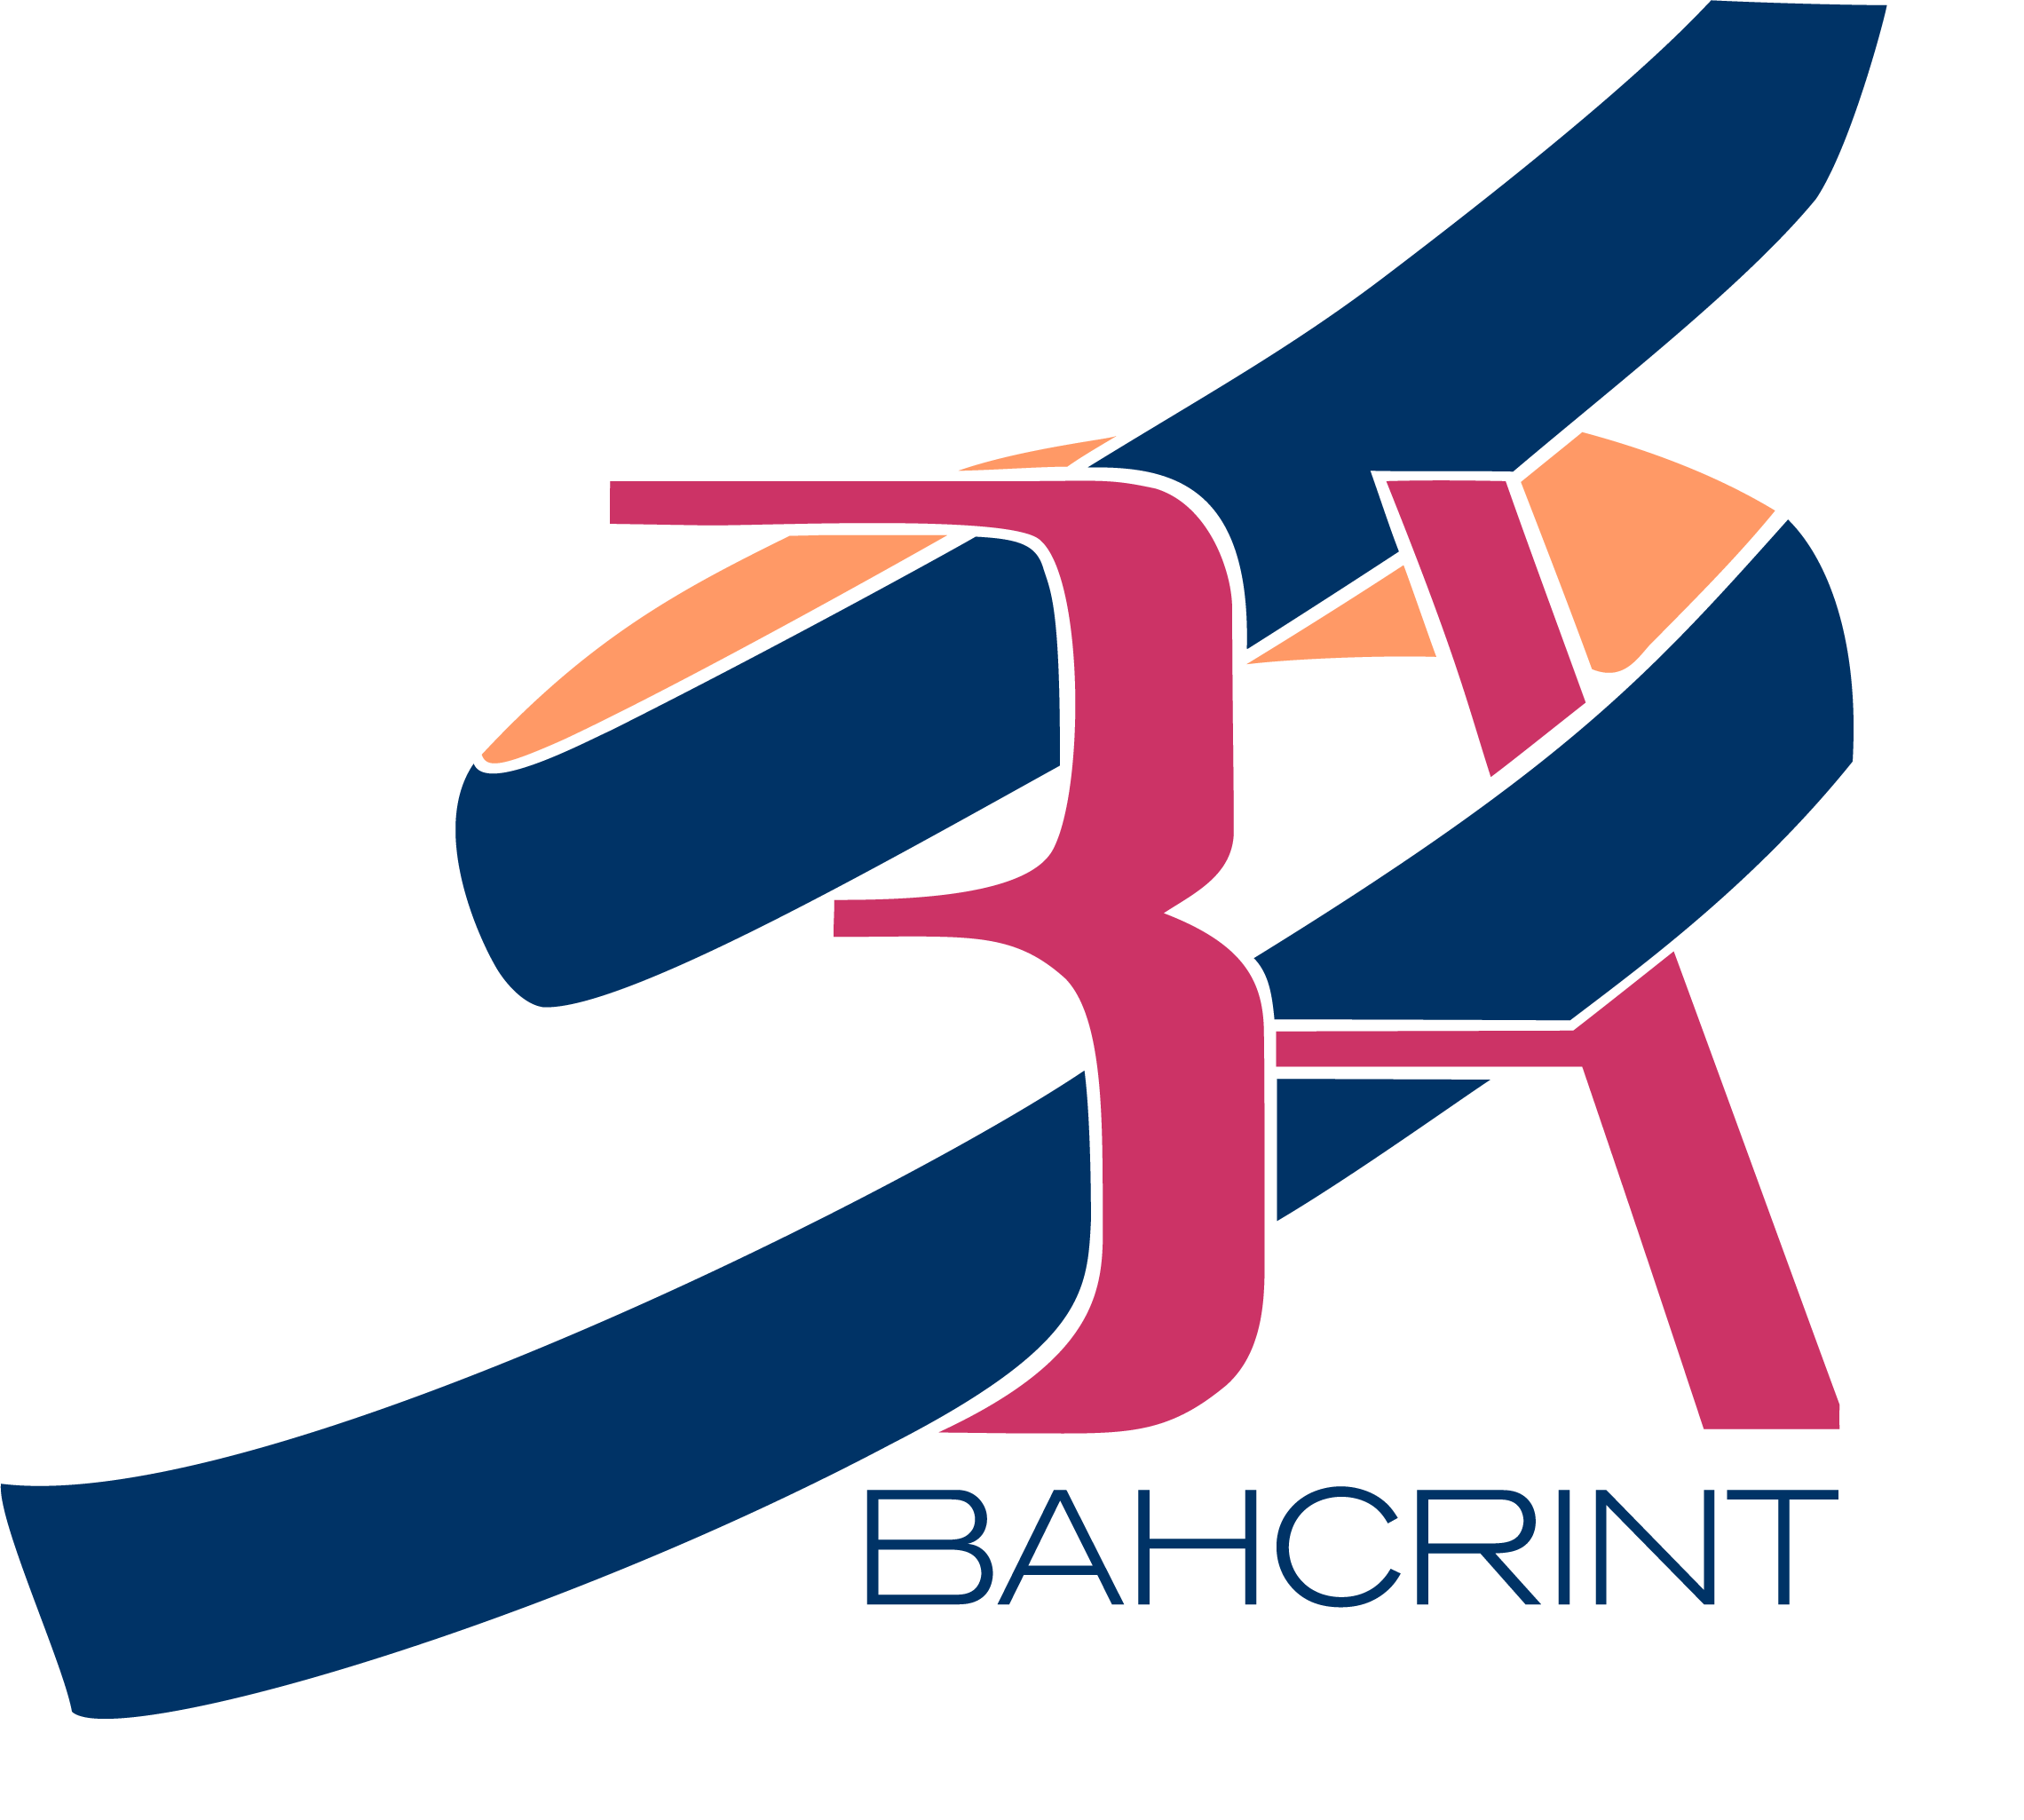 Bahcrint